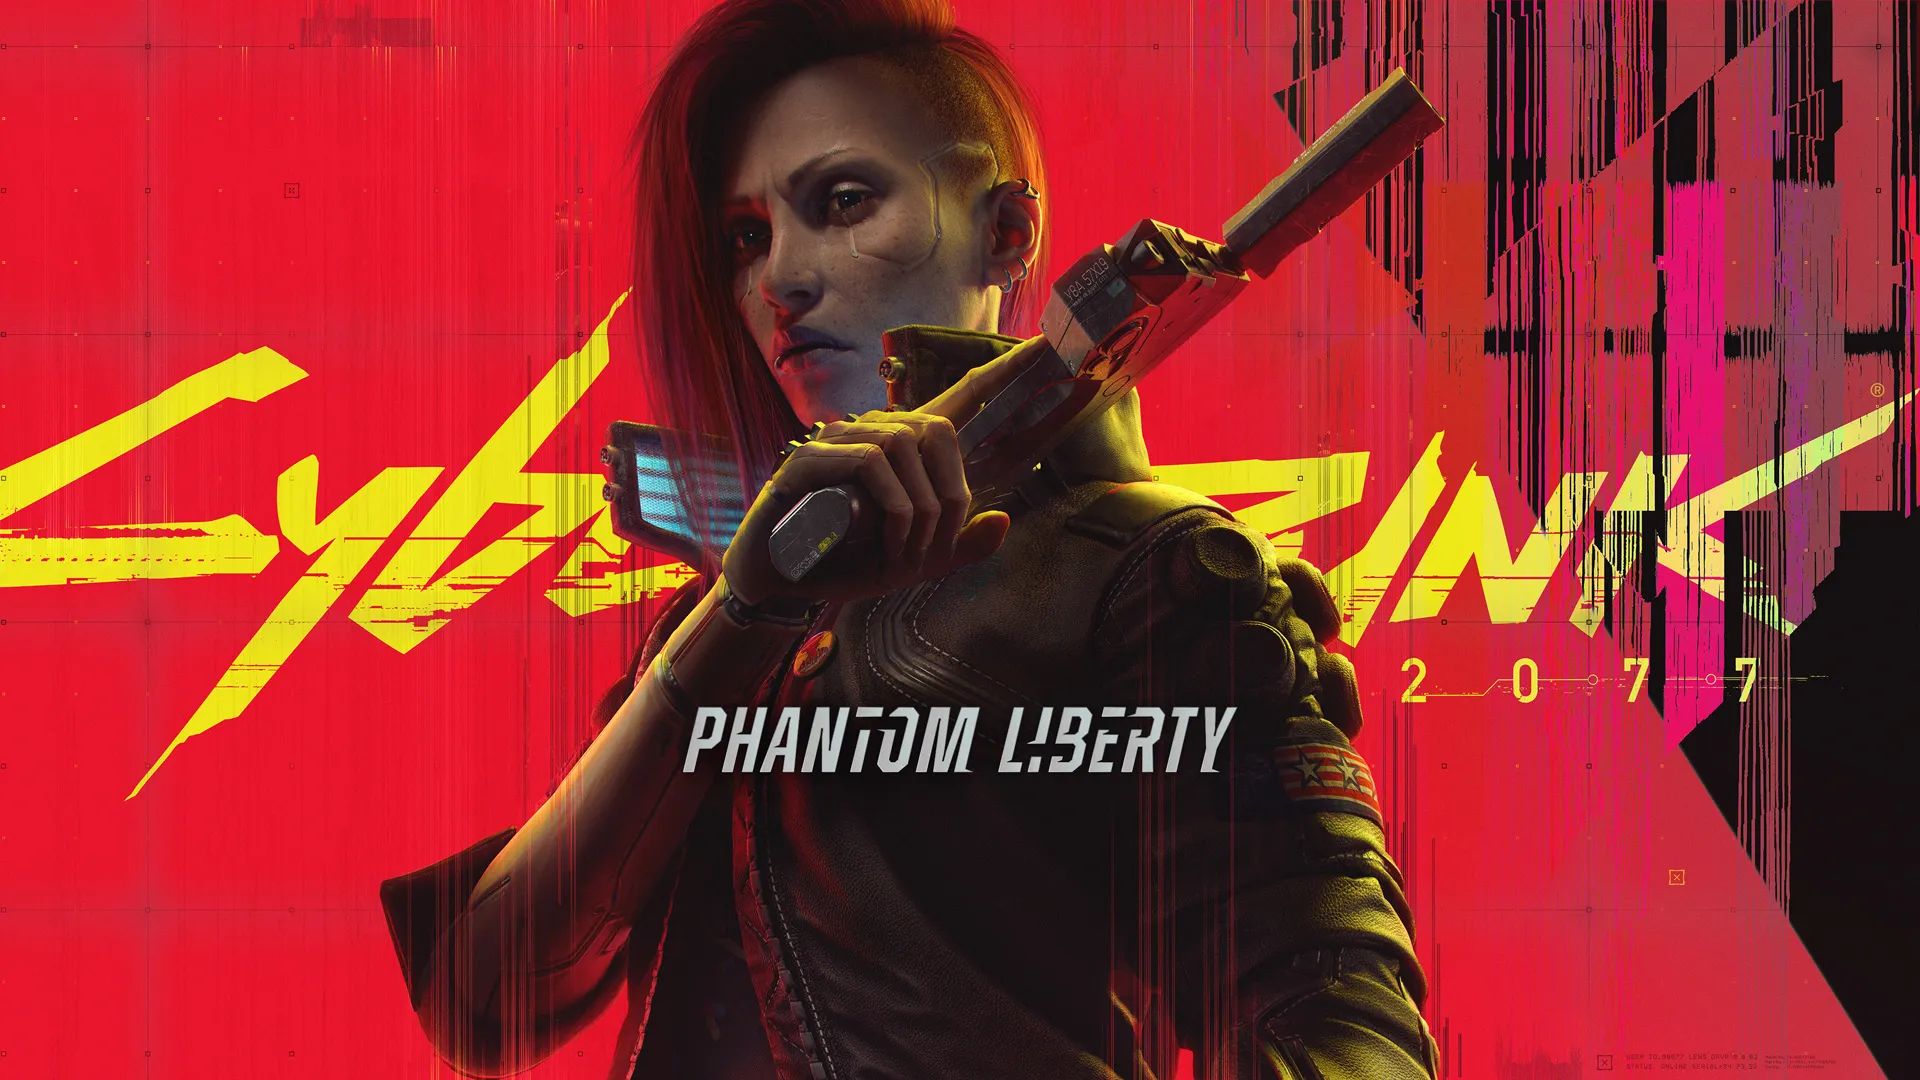 Grafika przedstawia postać kobiecą z gry "Cyberpunk 2077", ubraną w czarną kurtkę i z cyfrowo ulepszonymi protezami rąk, na tle czerwono-żółtego logo gry oraz napisu "PHANTOM LIBERTY 2077" w tonacji czerwono-żółto-czarnej.